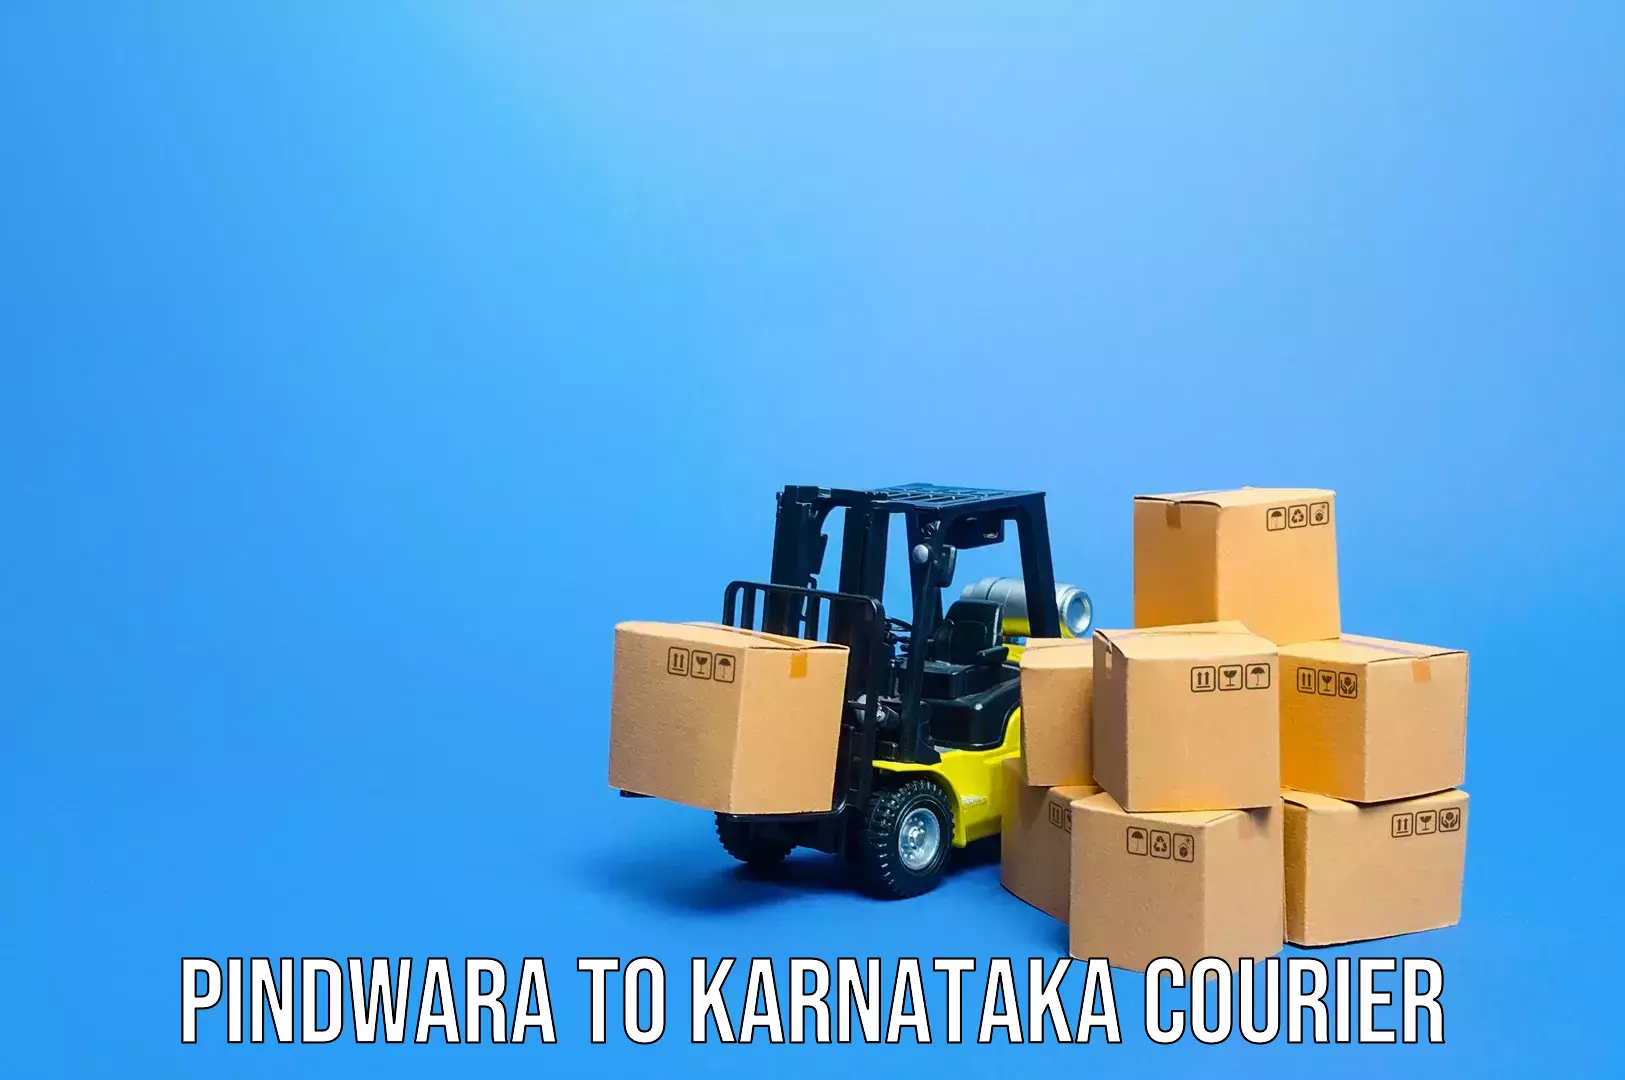 Baggage transport services Pindwara to Karnataka